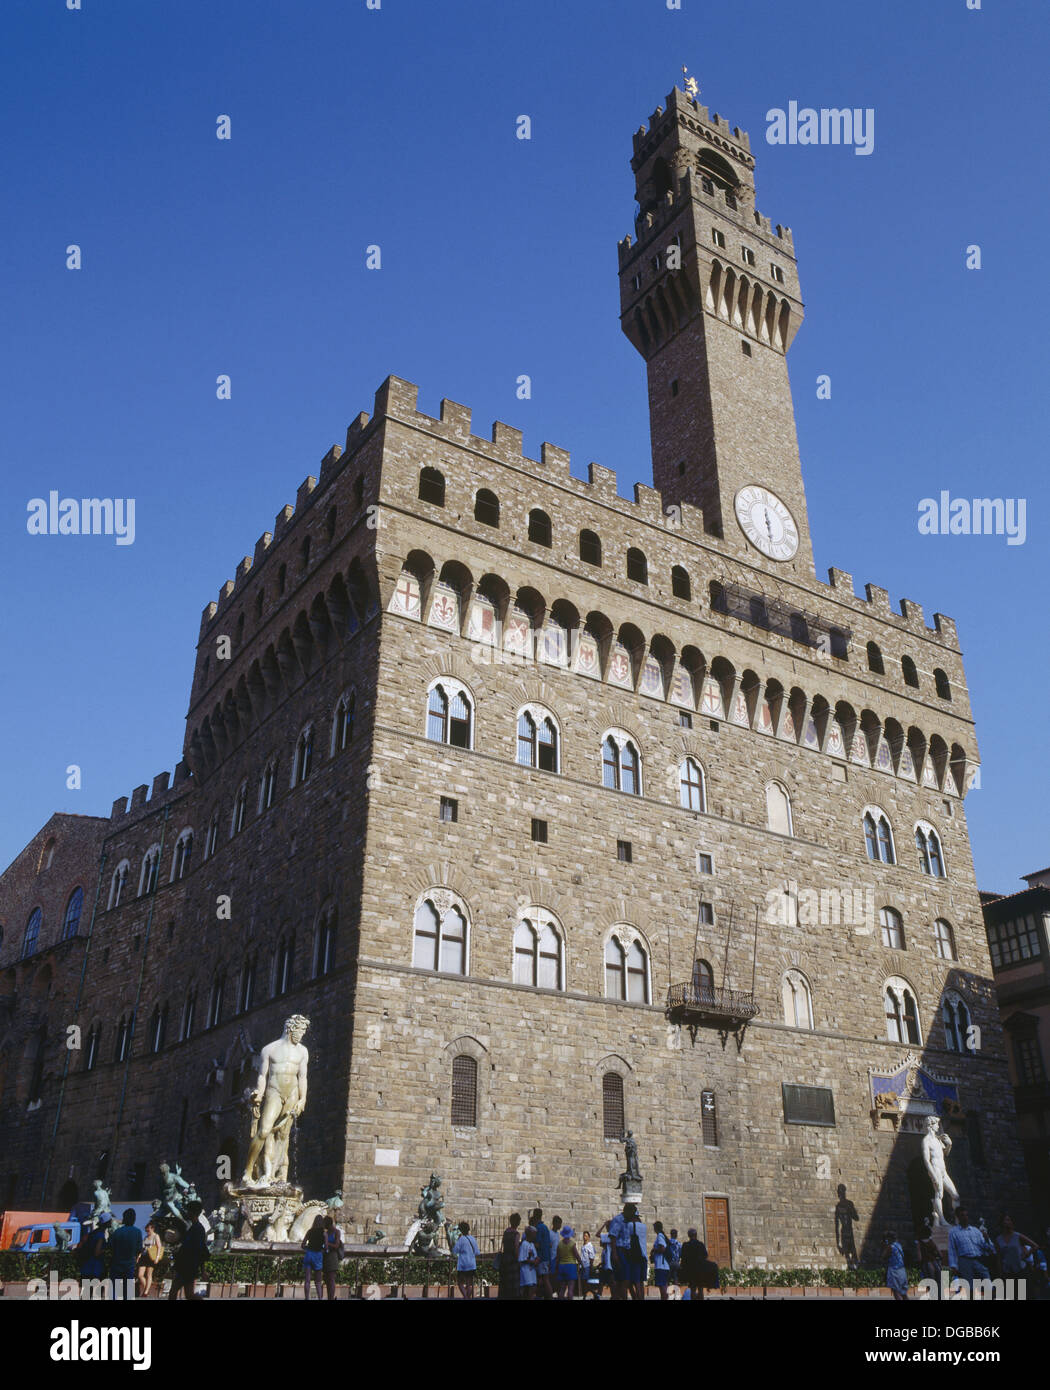 Palazzo Vecchio (siglo XIII) de Arnolfo di Cambio. Piazza della Signoria. Florencia. Italia. Foto de stock